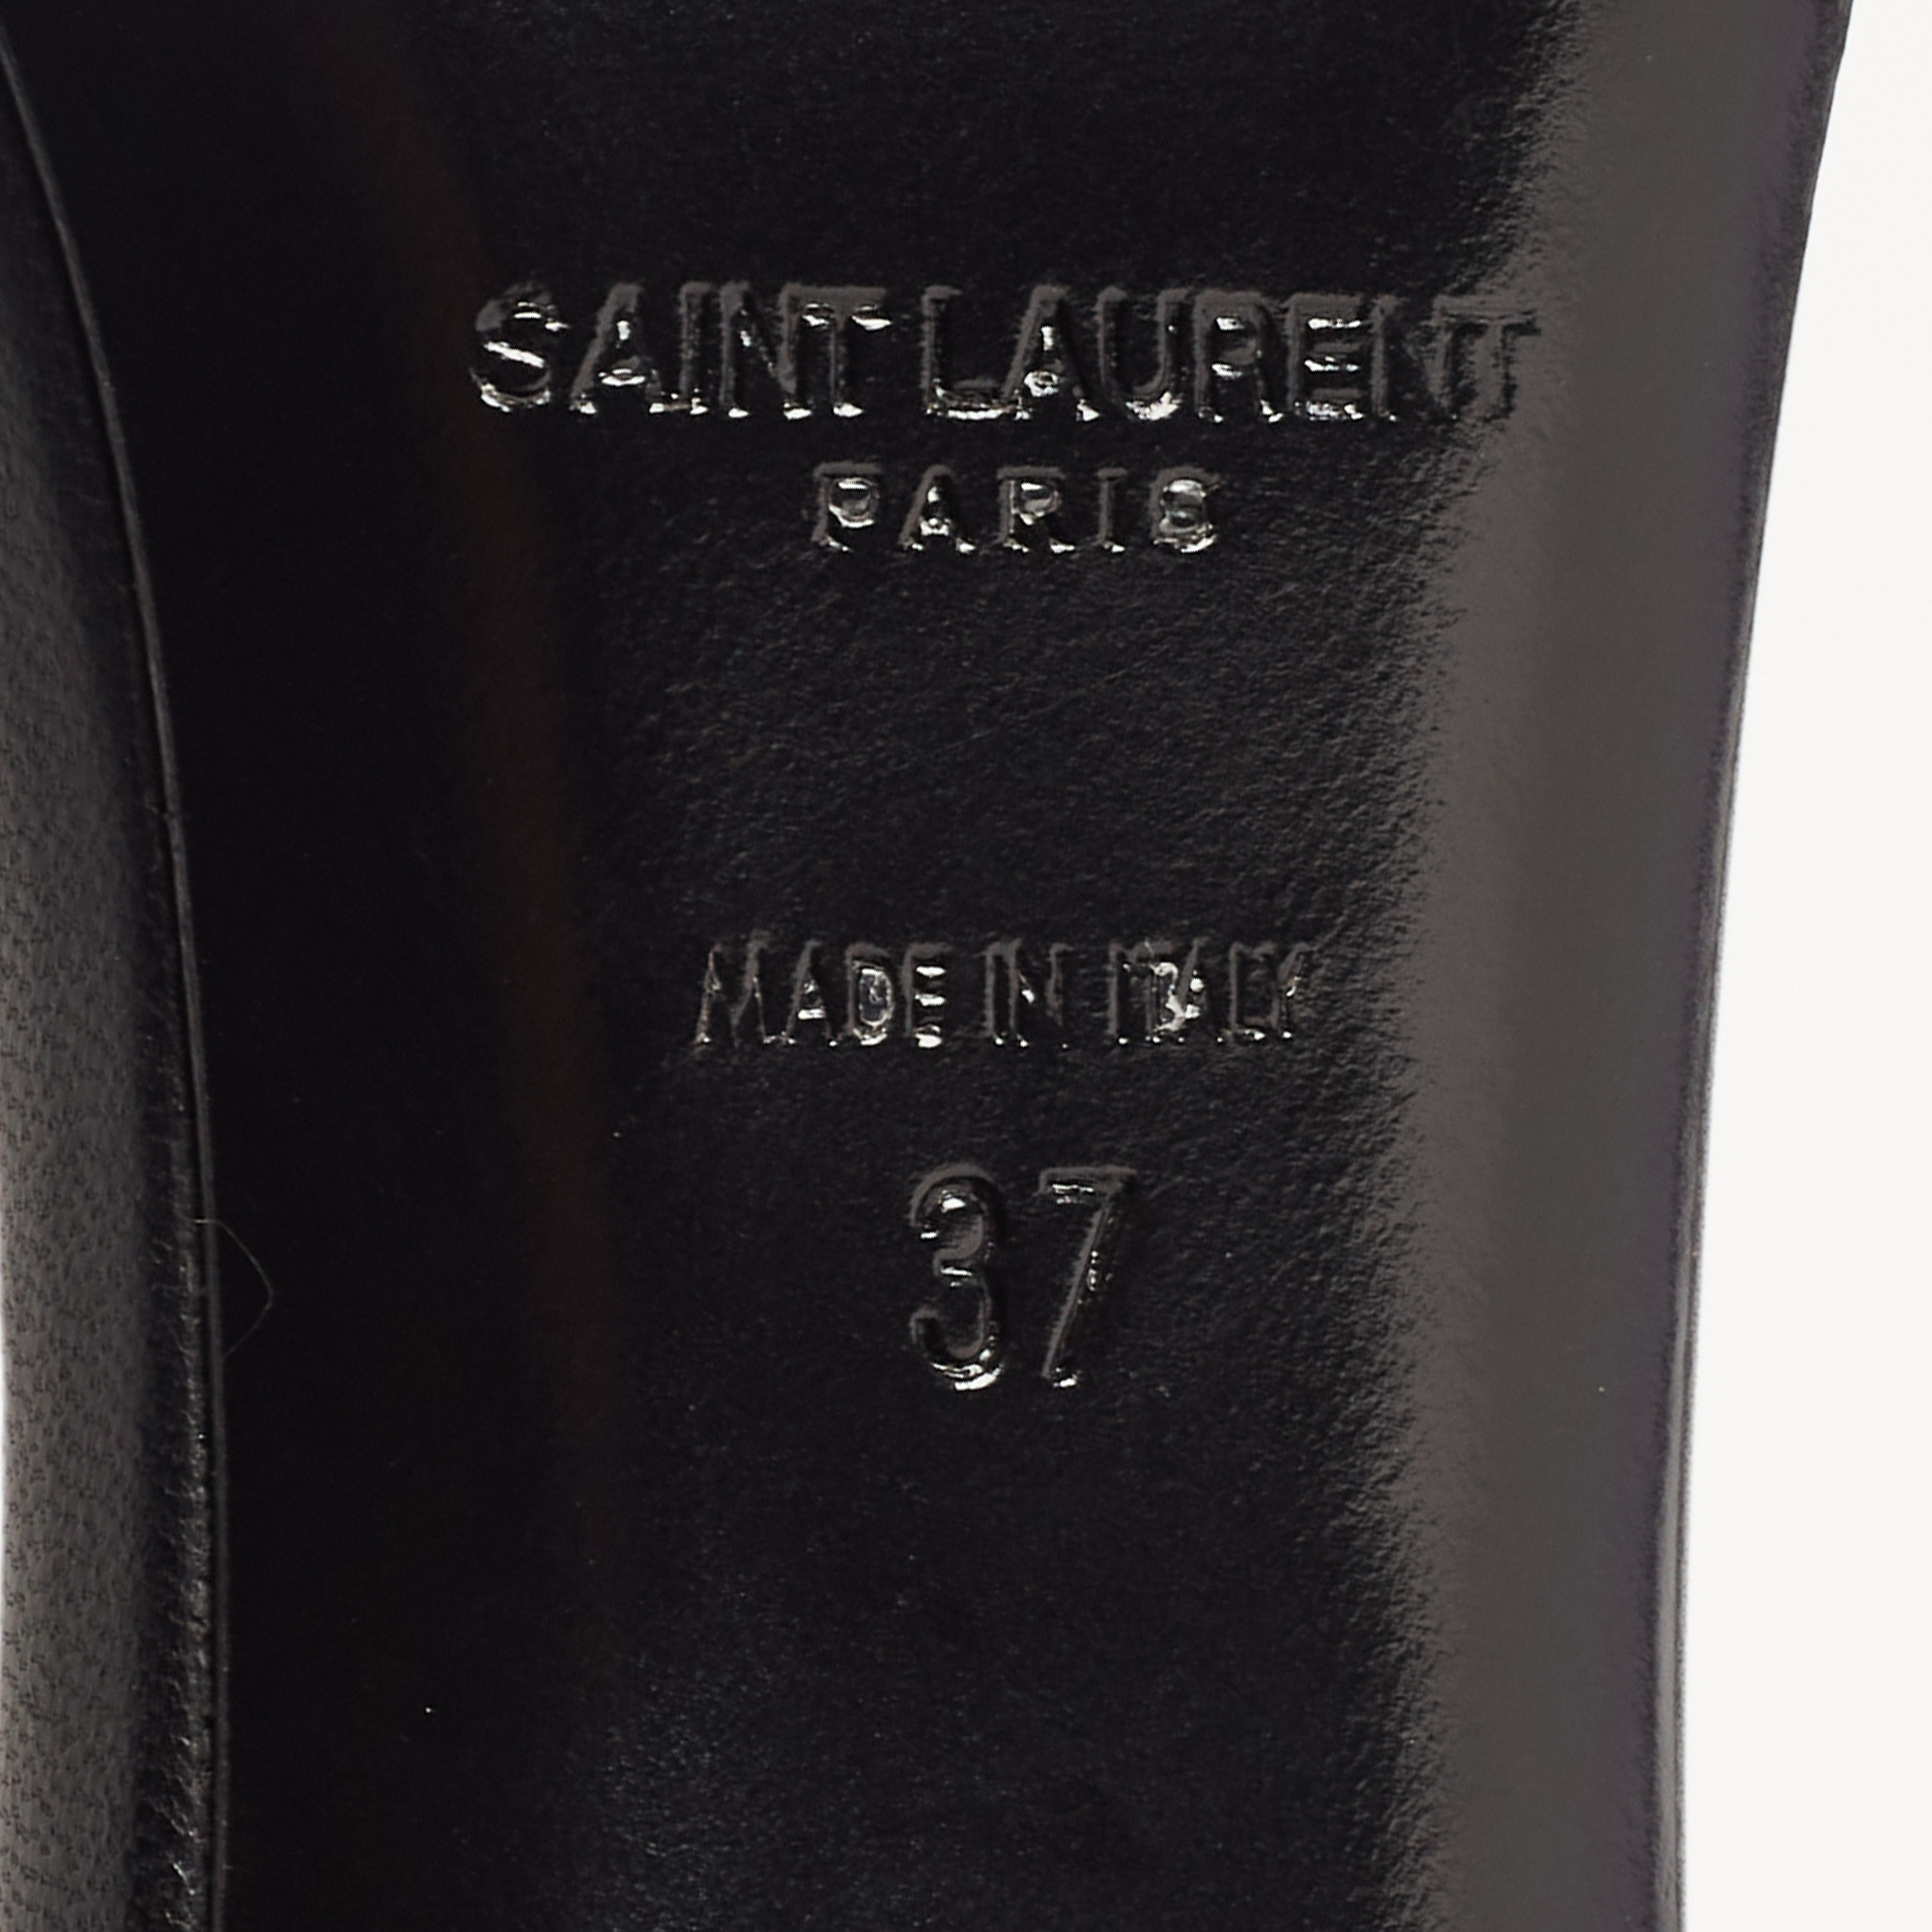 Saint Laurent Black Leather Jane Ankle Strap Sandals Size 37